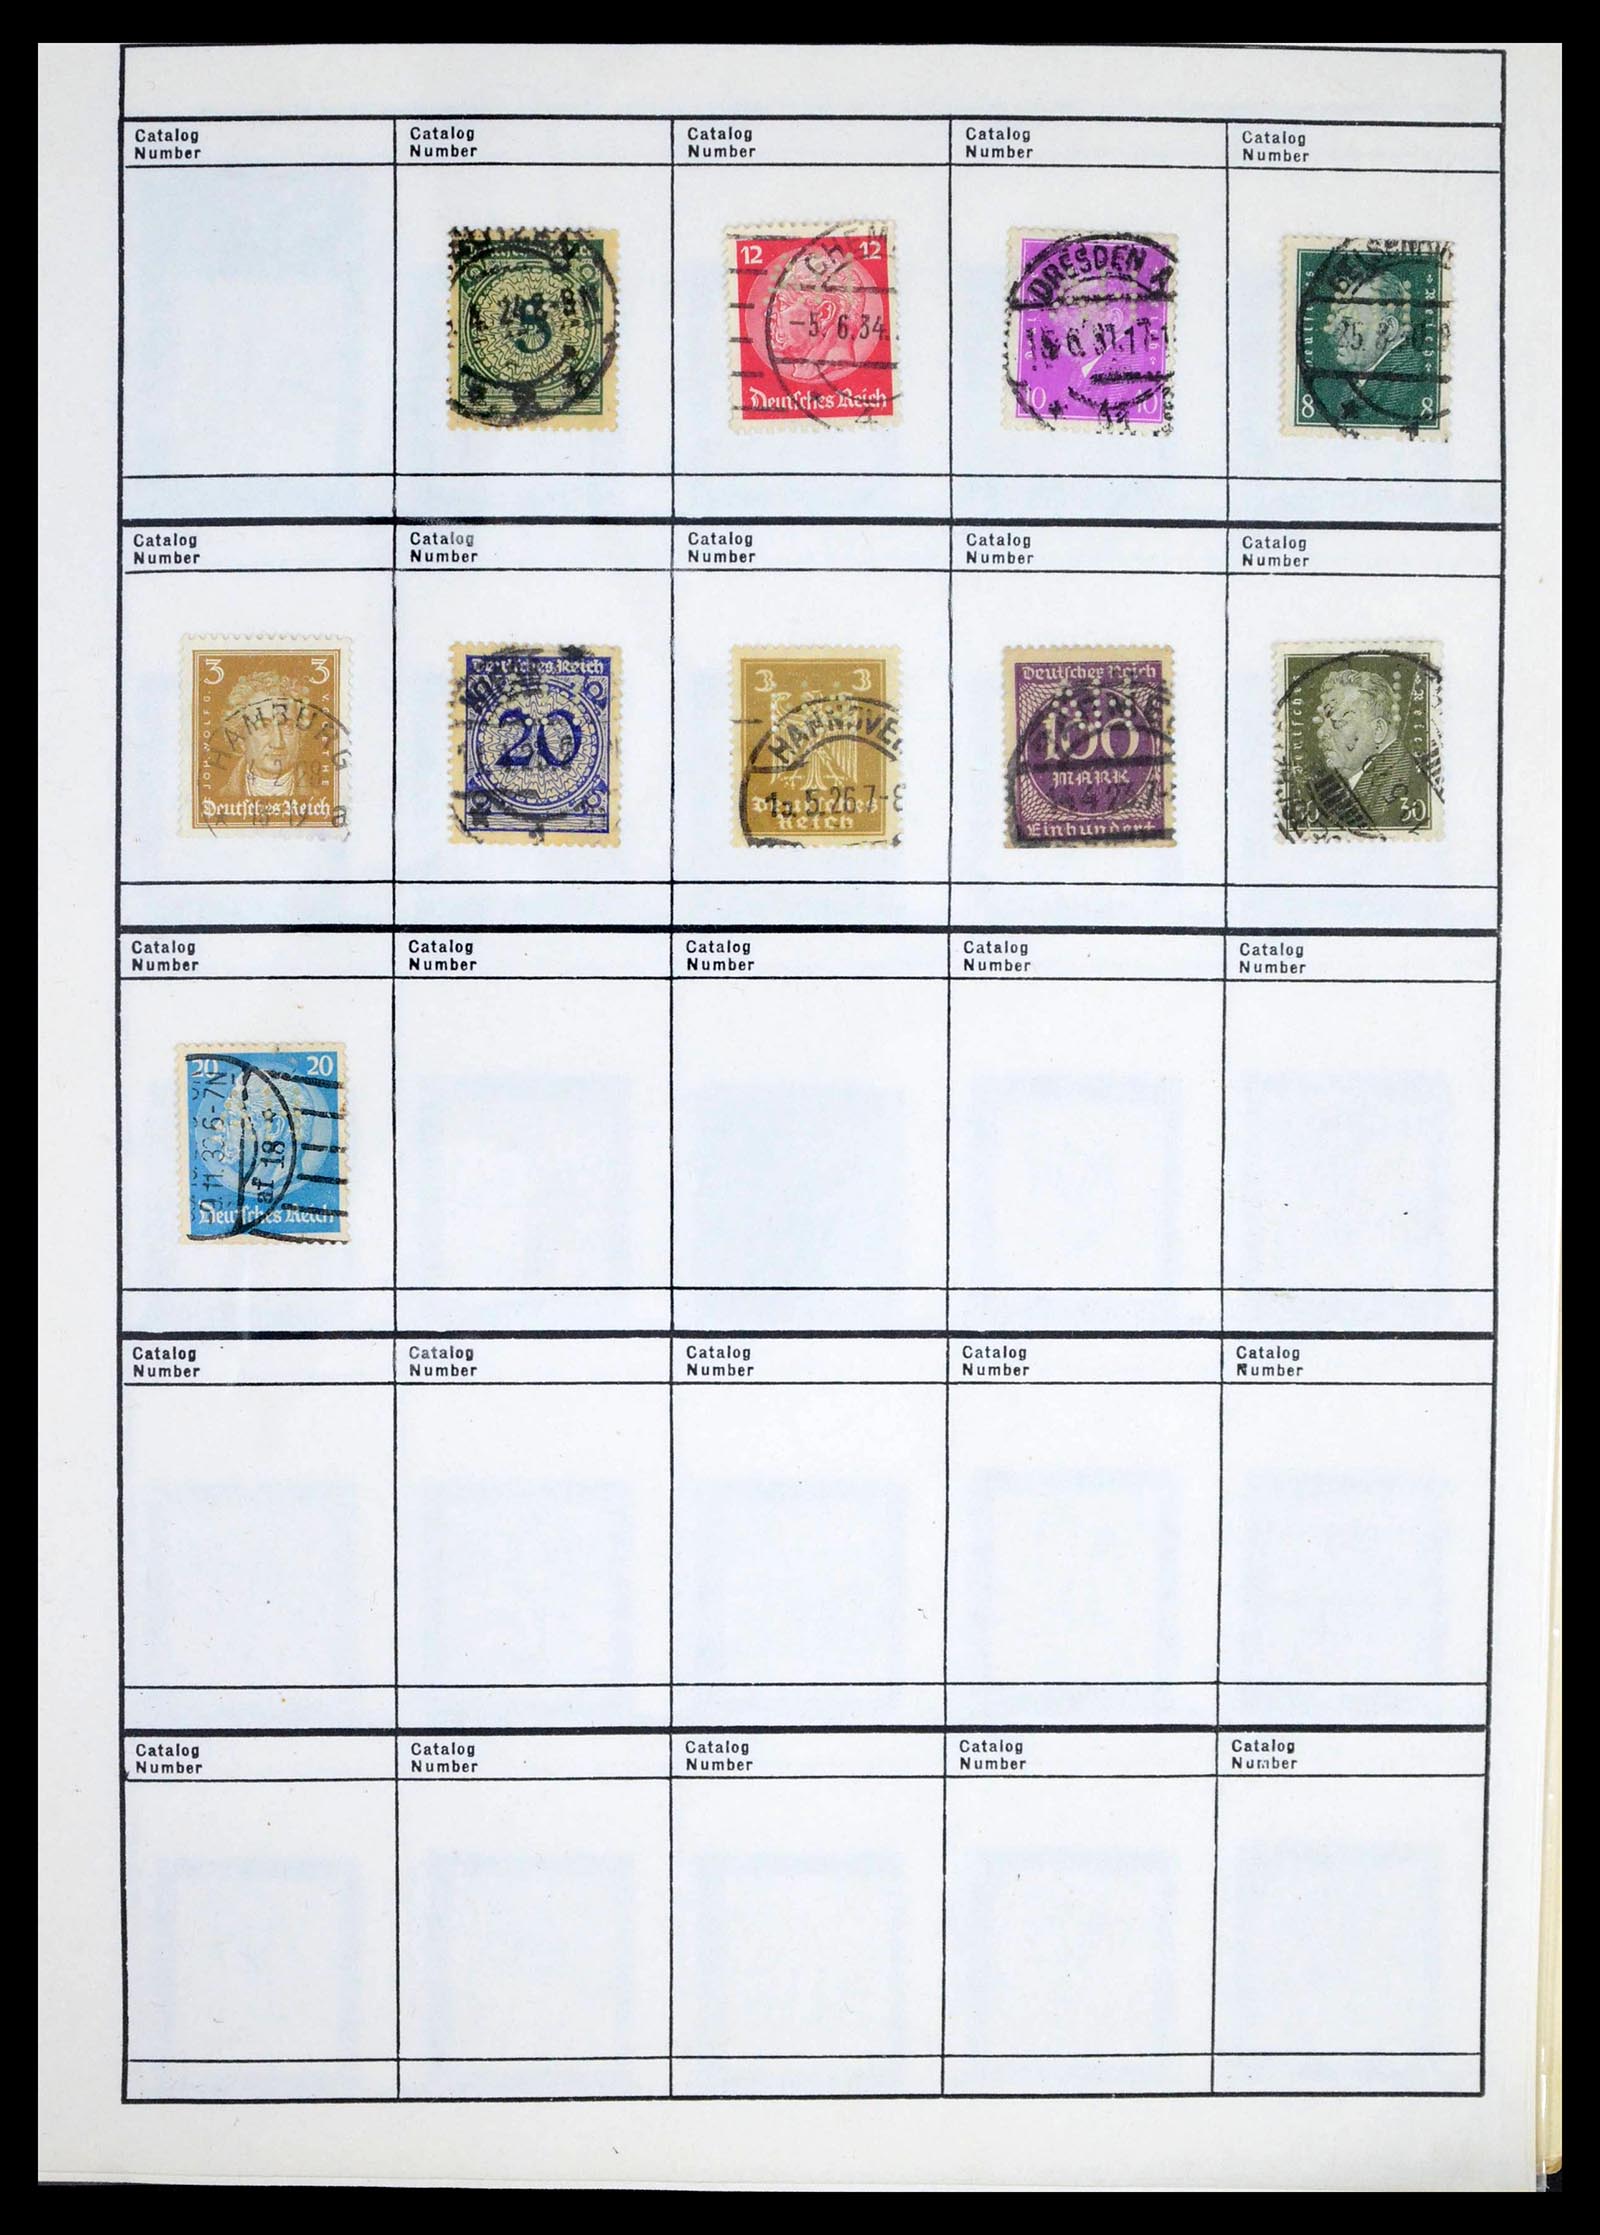 39480 0020 - Stamp collection 39480 German Reich perfins 1880-1955.